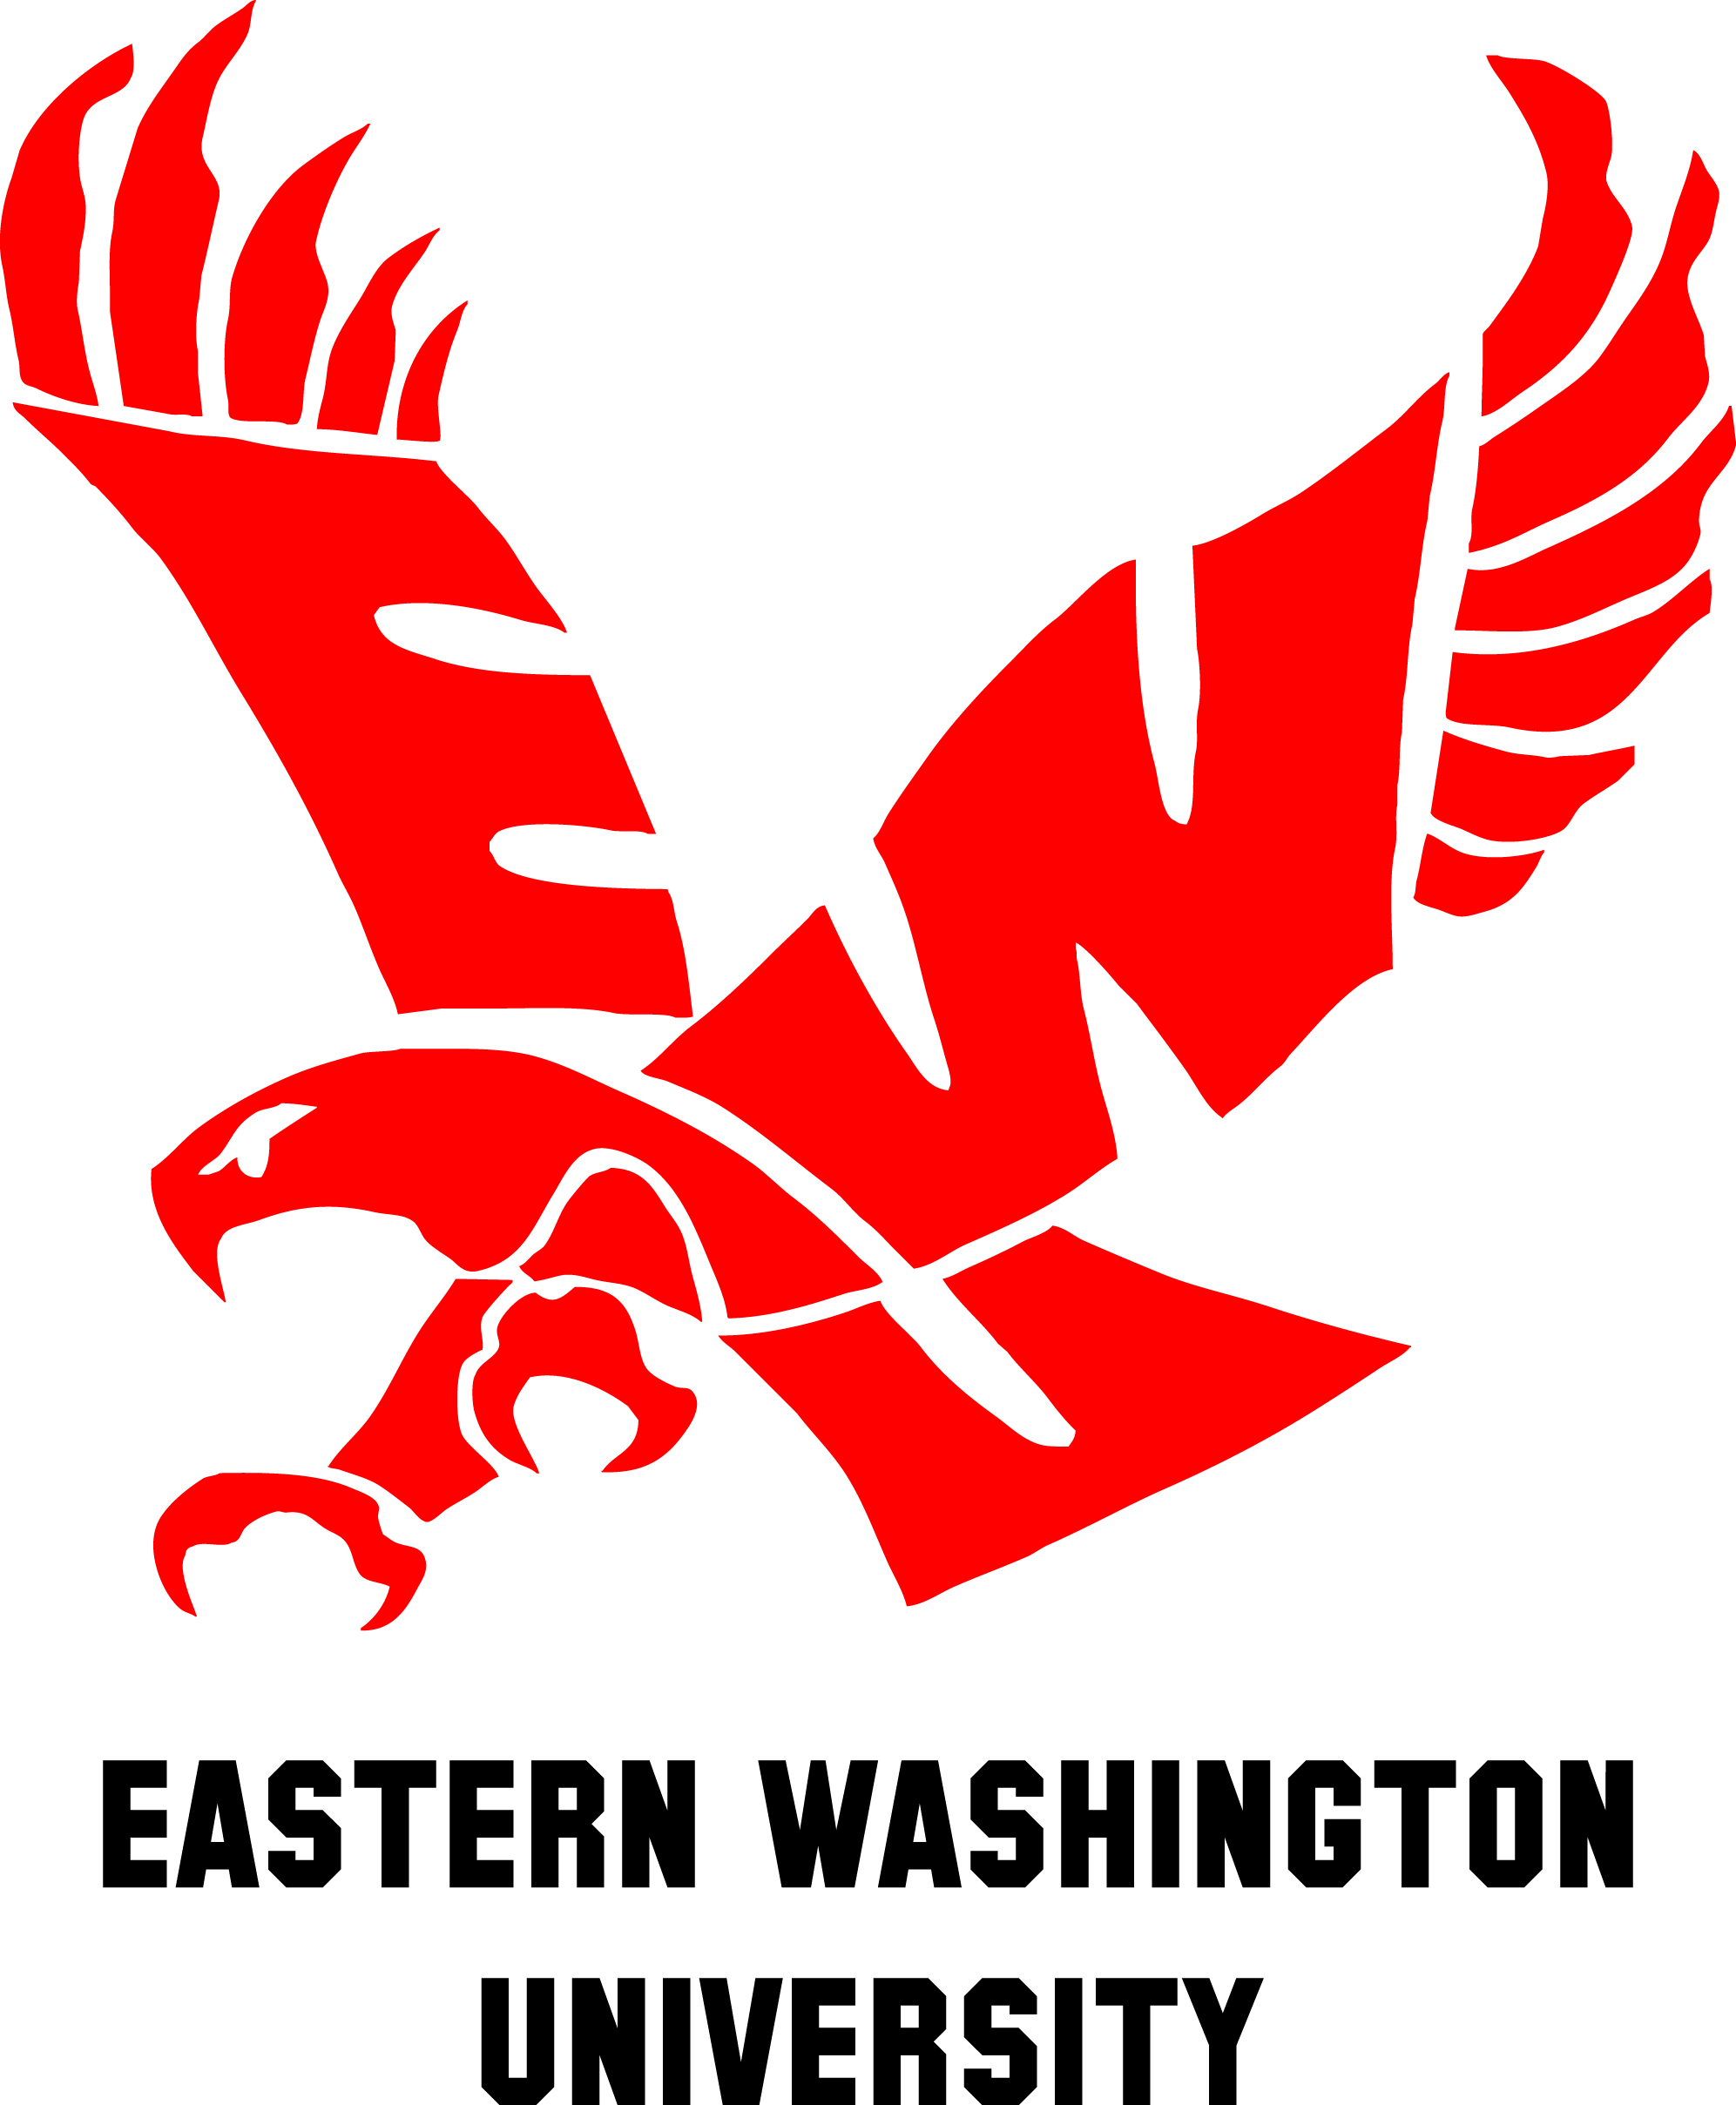 Ewu Eastern Washington University Clipart Large Size Png Image Pikpng